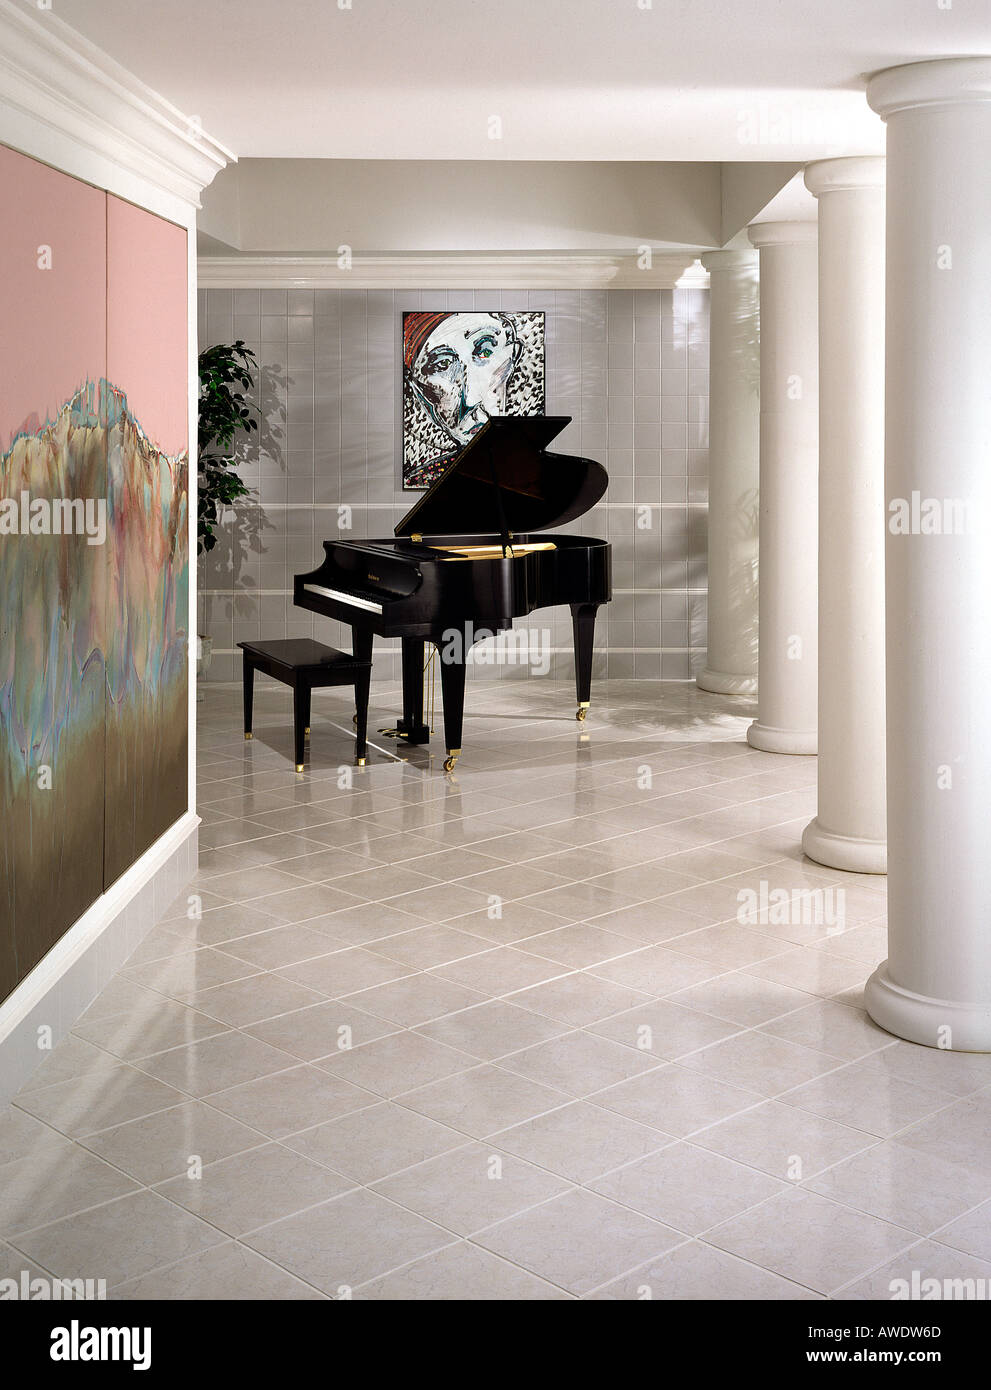 Habitación interior con suelos de baldosa pasillo entrada grand piano  columnas dóricas metro style suelo de baldosas de cerámica de peinado  Fotografía de stock - Alamy